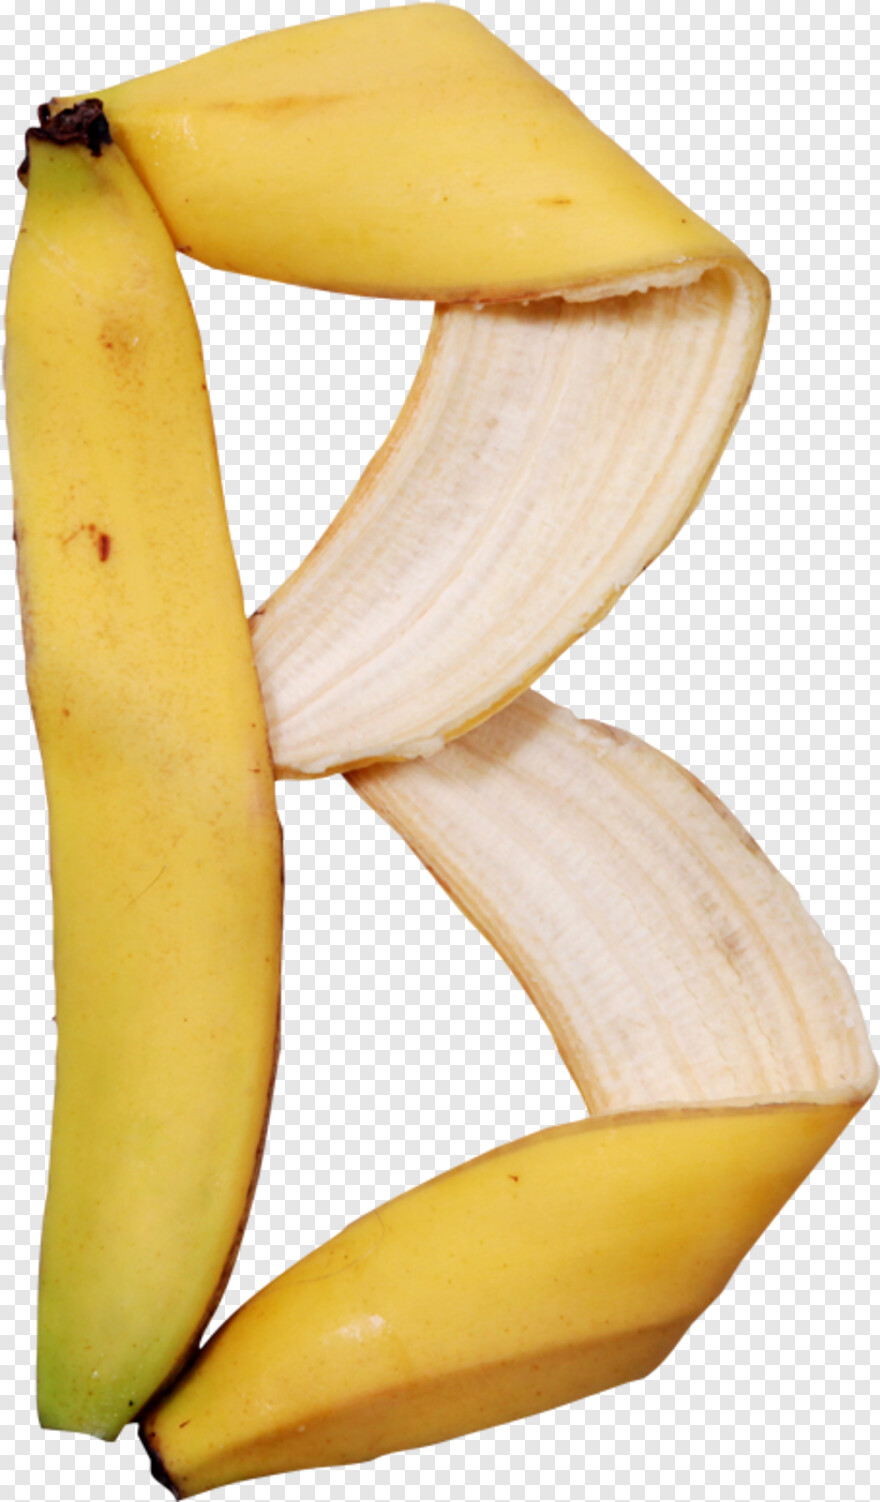 banana-peel # 544658